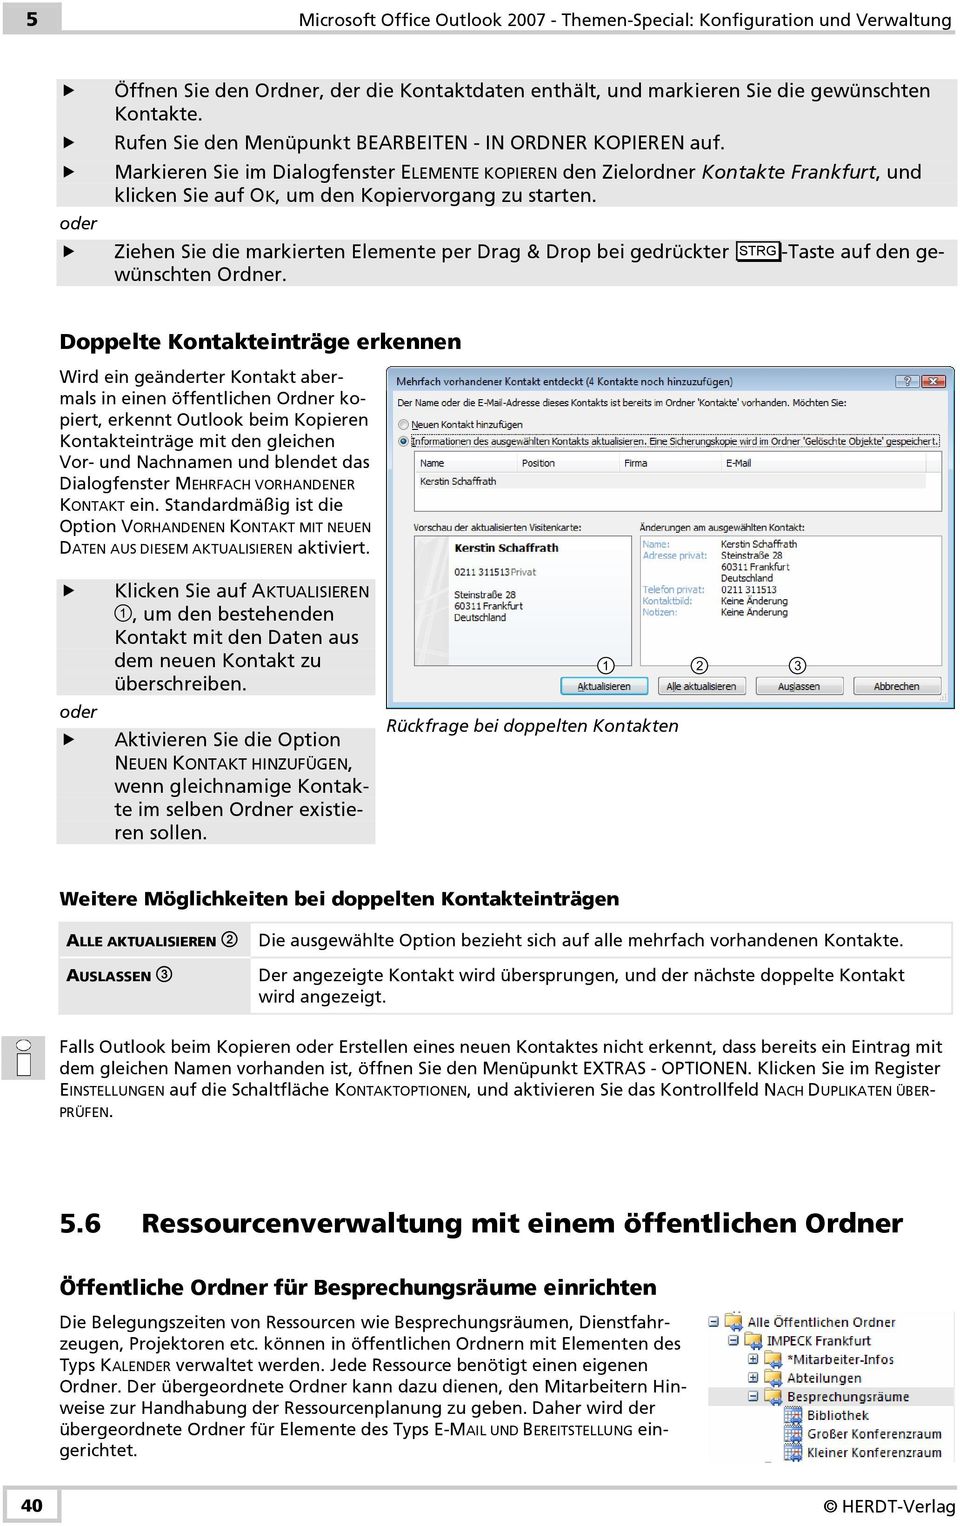 Markieren Sie im Dialogfenster ELEMENTE KOPIEREN den Zielordner Kontakte Frankfurt, und klicken Sie auf OK, um den Kopiervorgang zu starten.